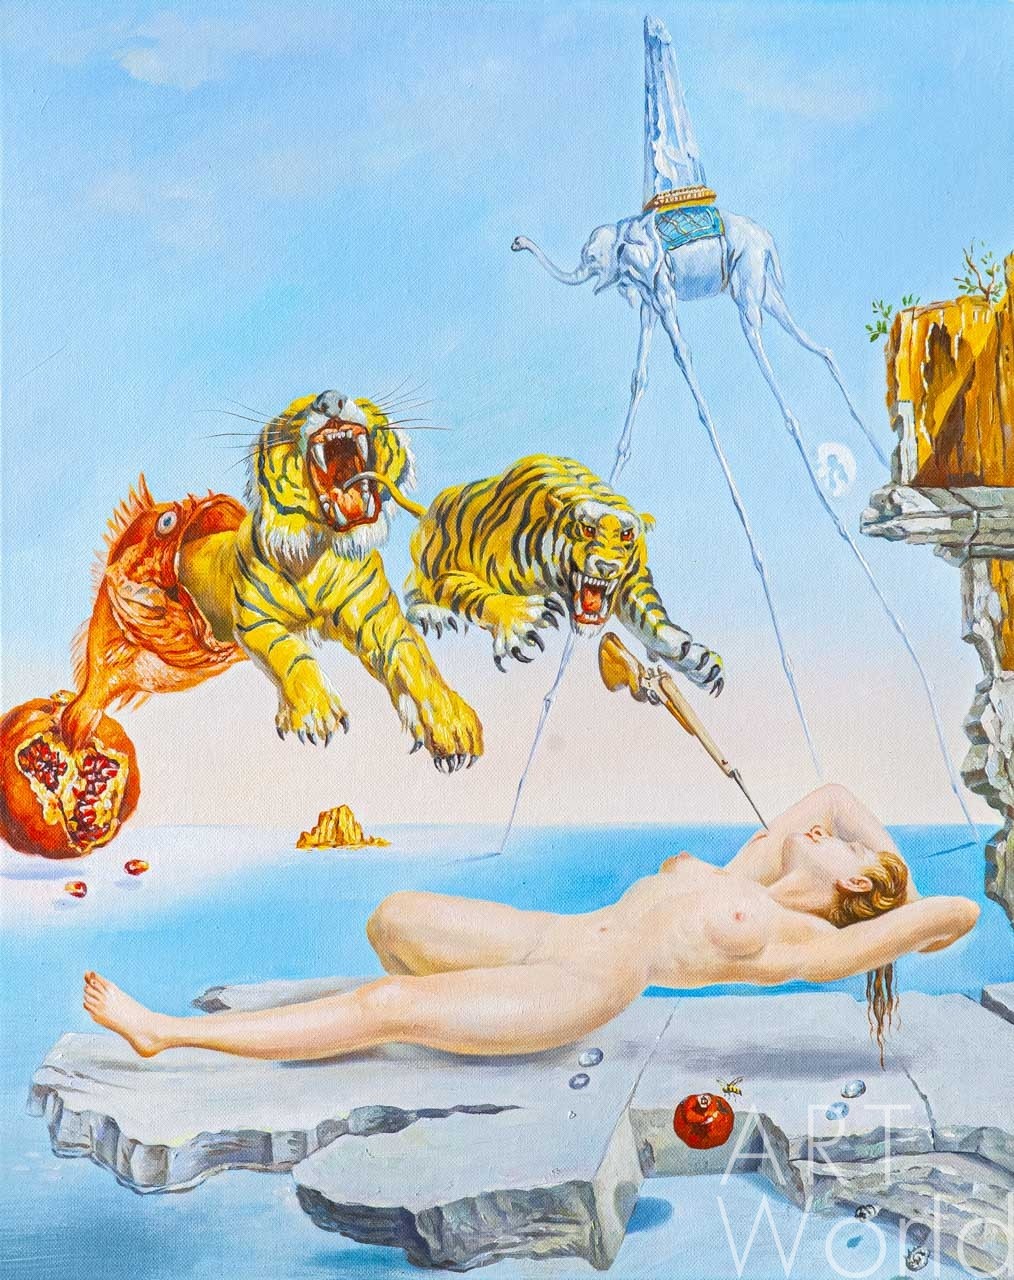 картина масло холст Копия картины Сальвадора Дали "Сон, вызванный полетом пчелы вокруг граната за секунду до пробуждения", худ. С. Камский, Дали Сальвадор (Salvador Dalí) Артворлд.ру